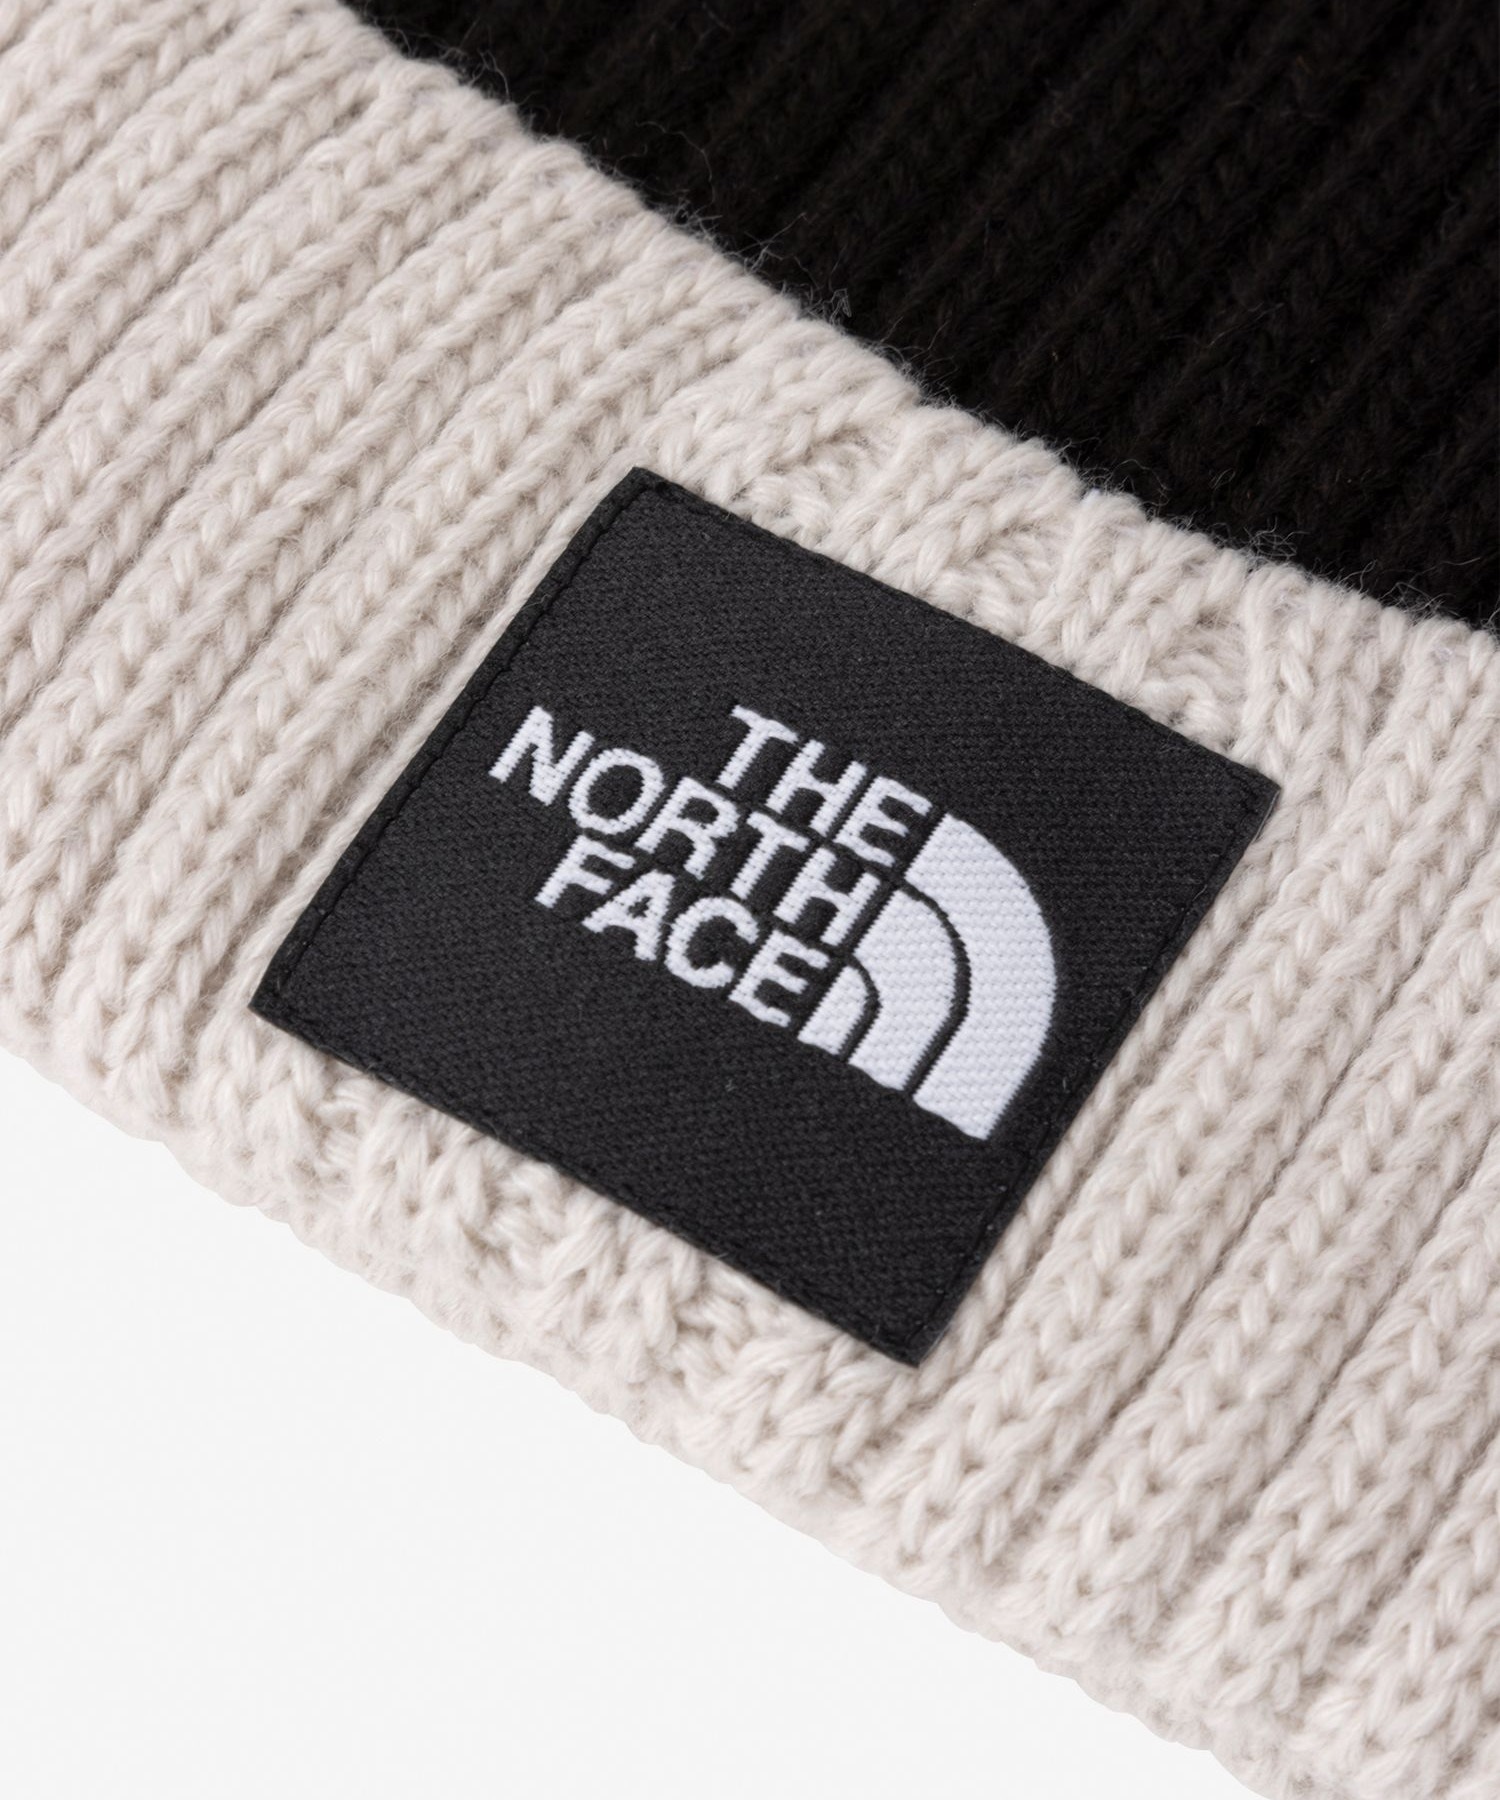 THE NORTH FACE/ザ・ノース・フェイス ポンポンカプッチョ キッズ ニットキャップ ビーニー 帽子 サンドストーン NNJ42307 SS(SS-FREE)